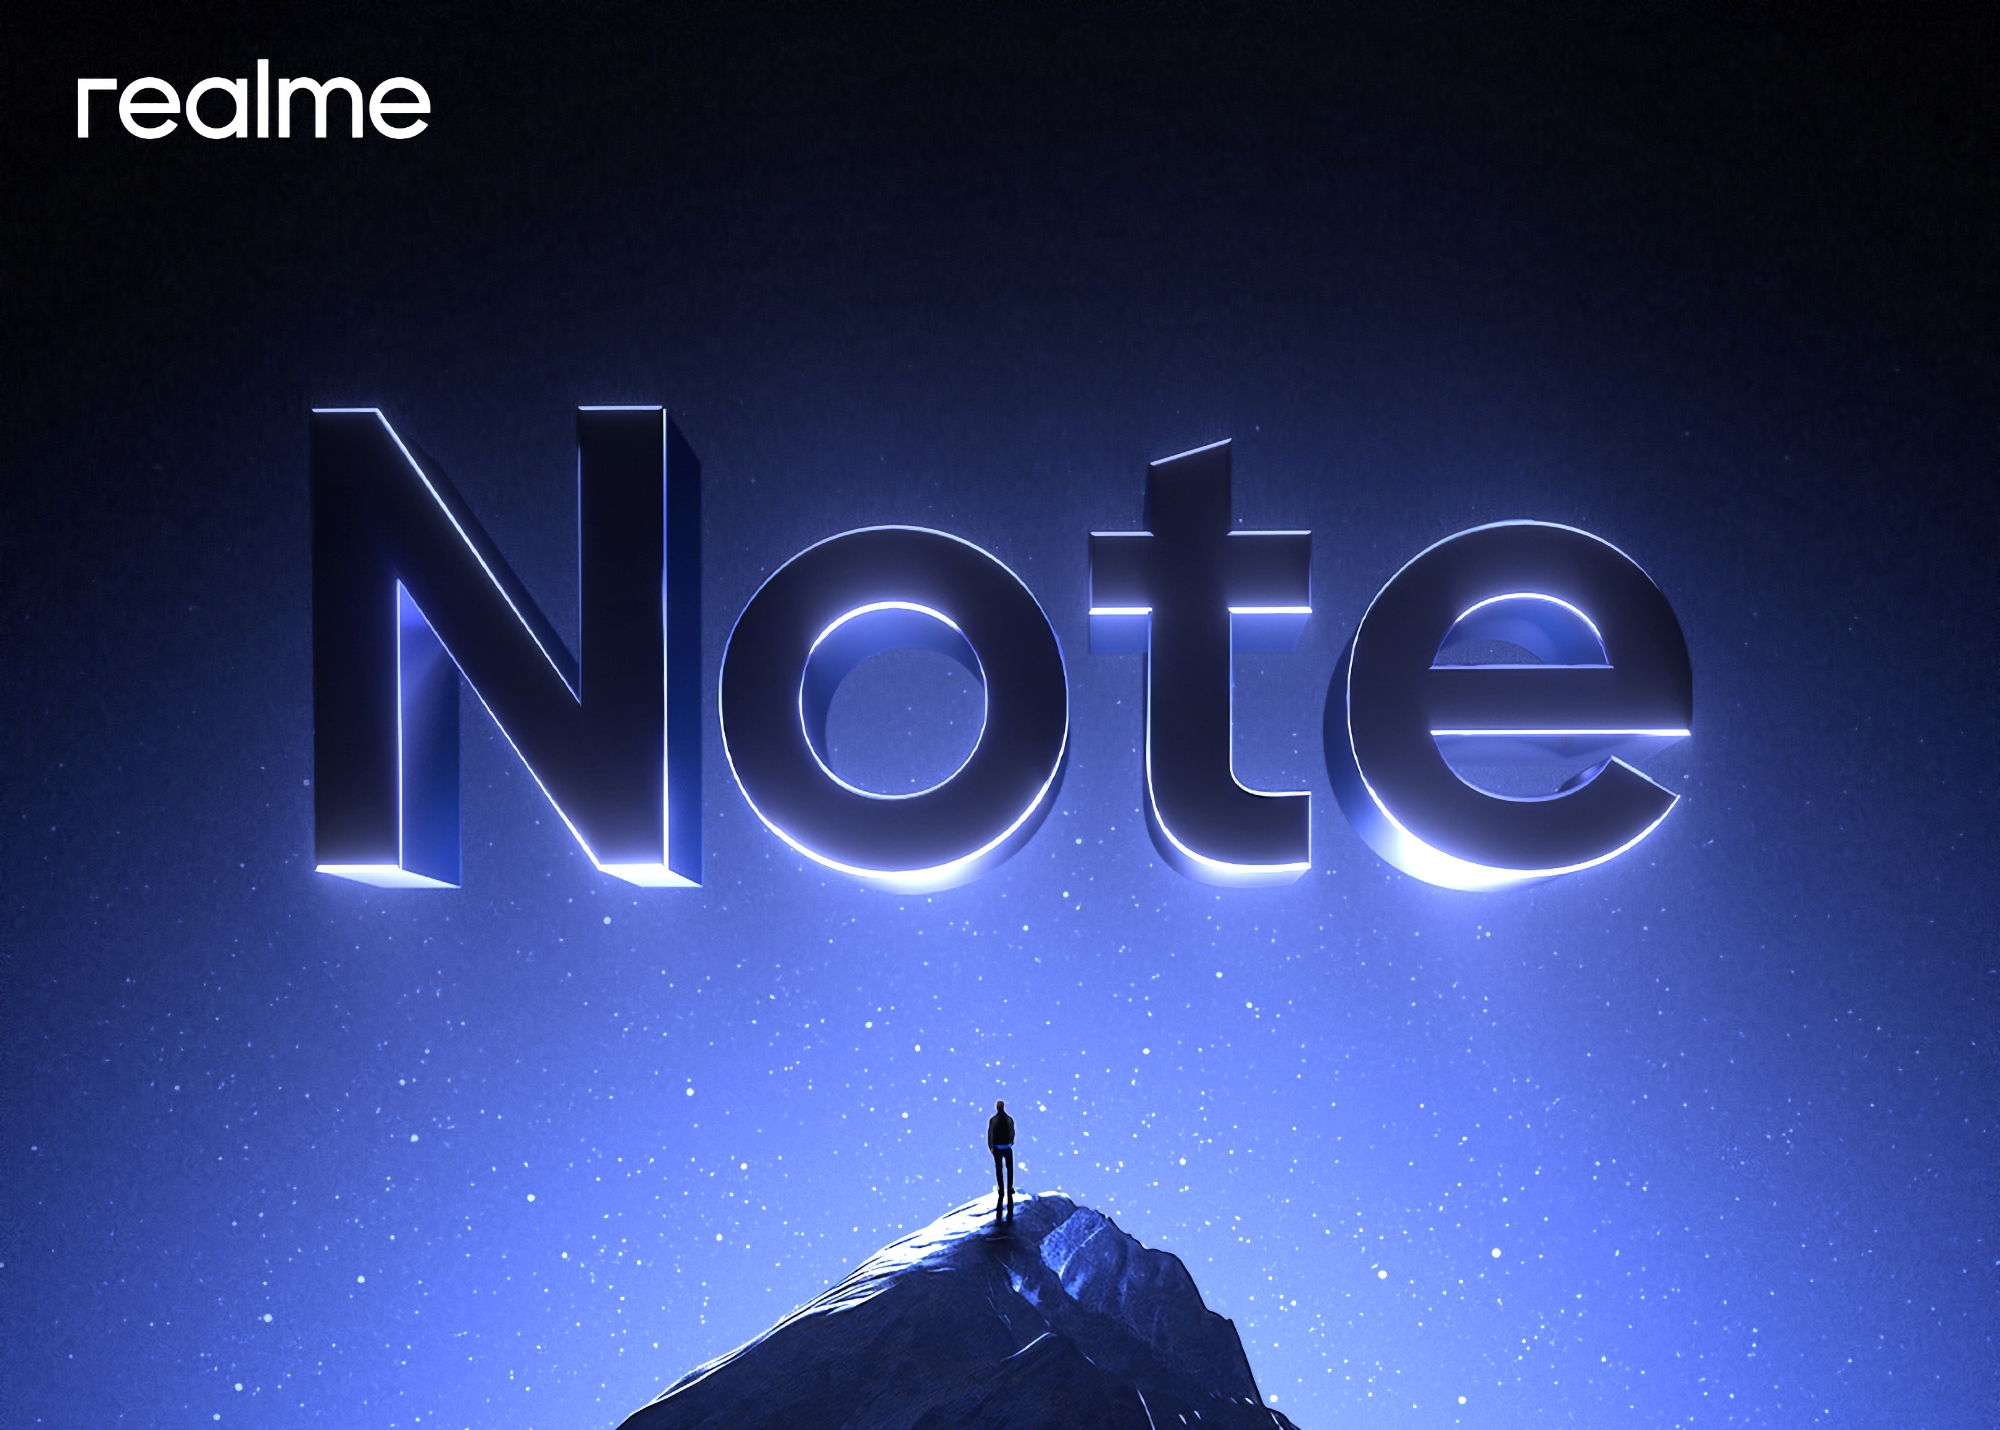 Om te concurreren met de Redmi Note? realme bereidt zich voor op de lancering van een nieuwe serie smartphones met de naam Note